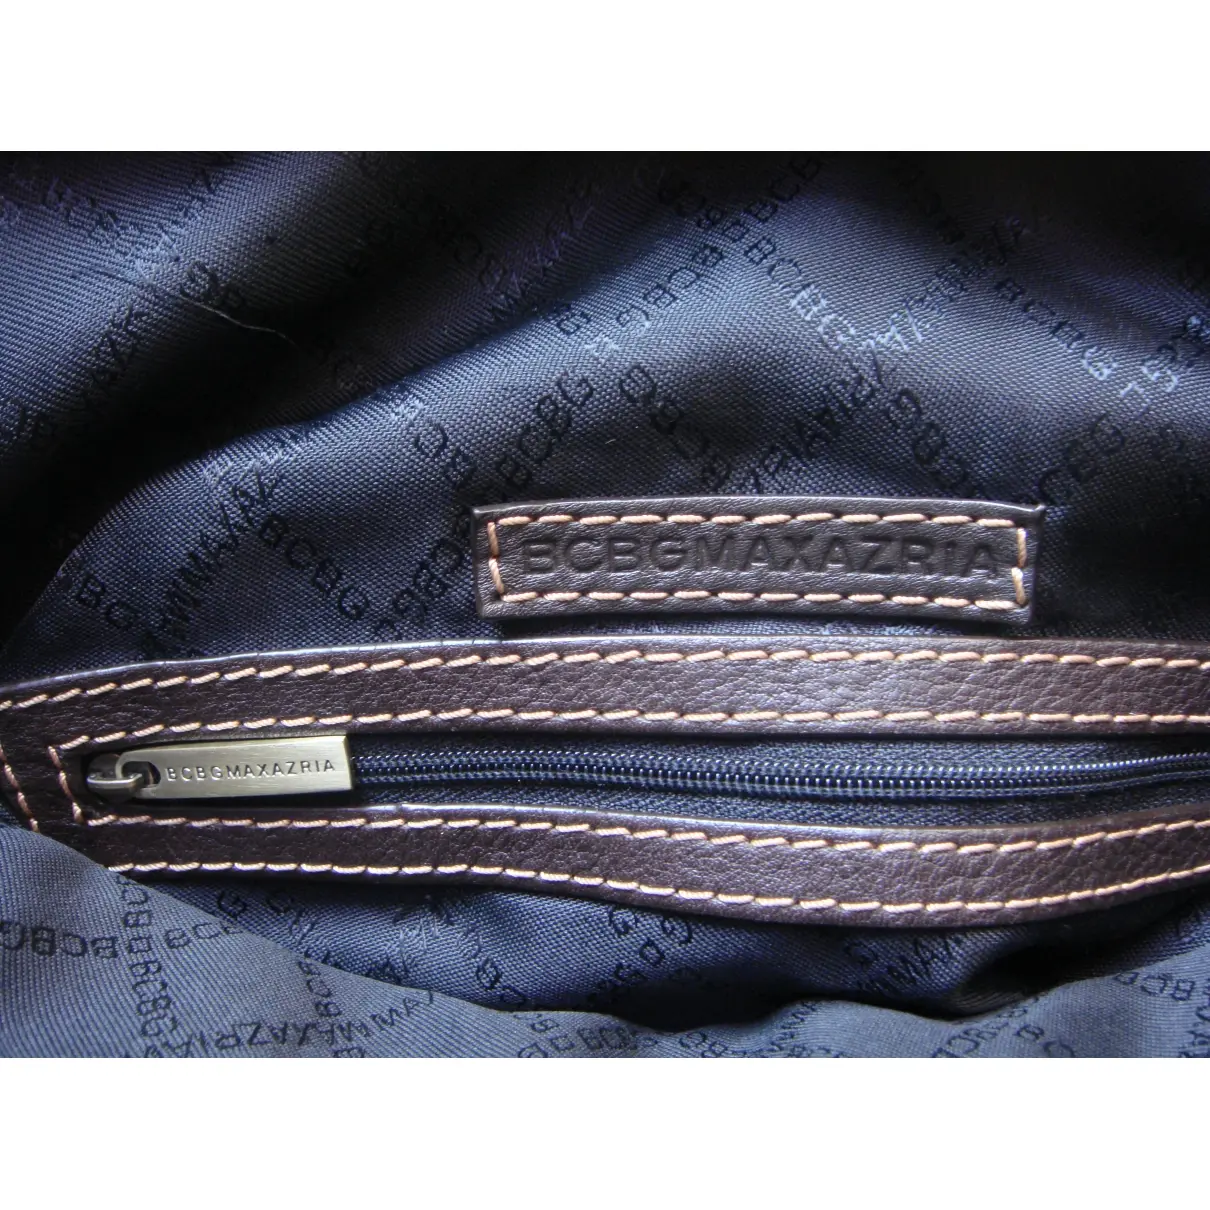 Leather handbag Bcbg Max Azria